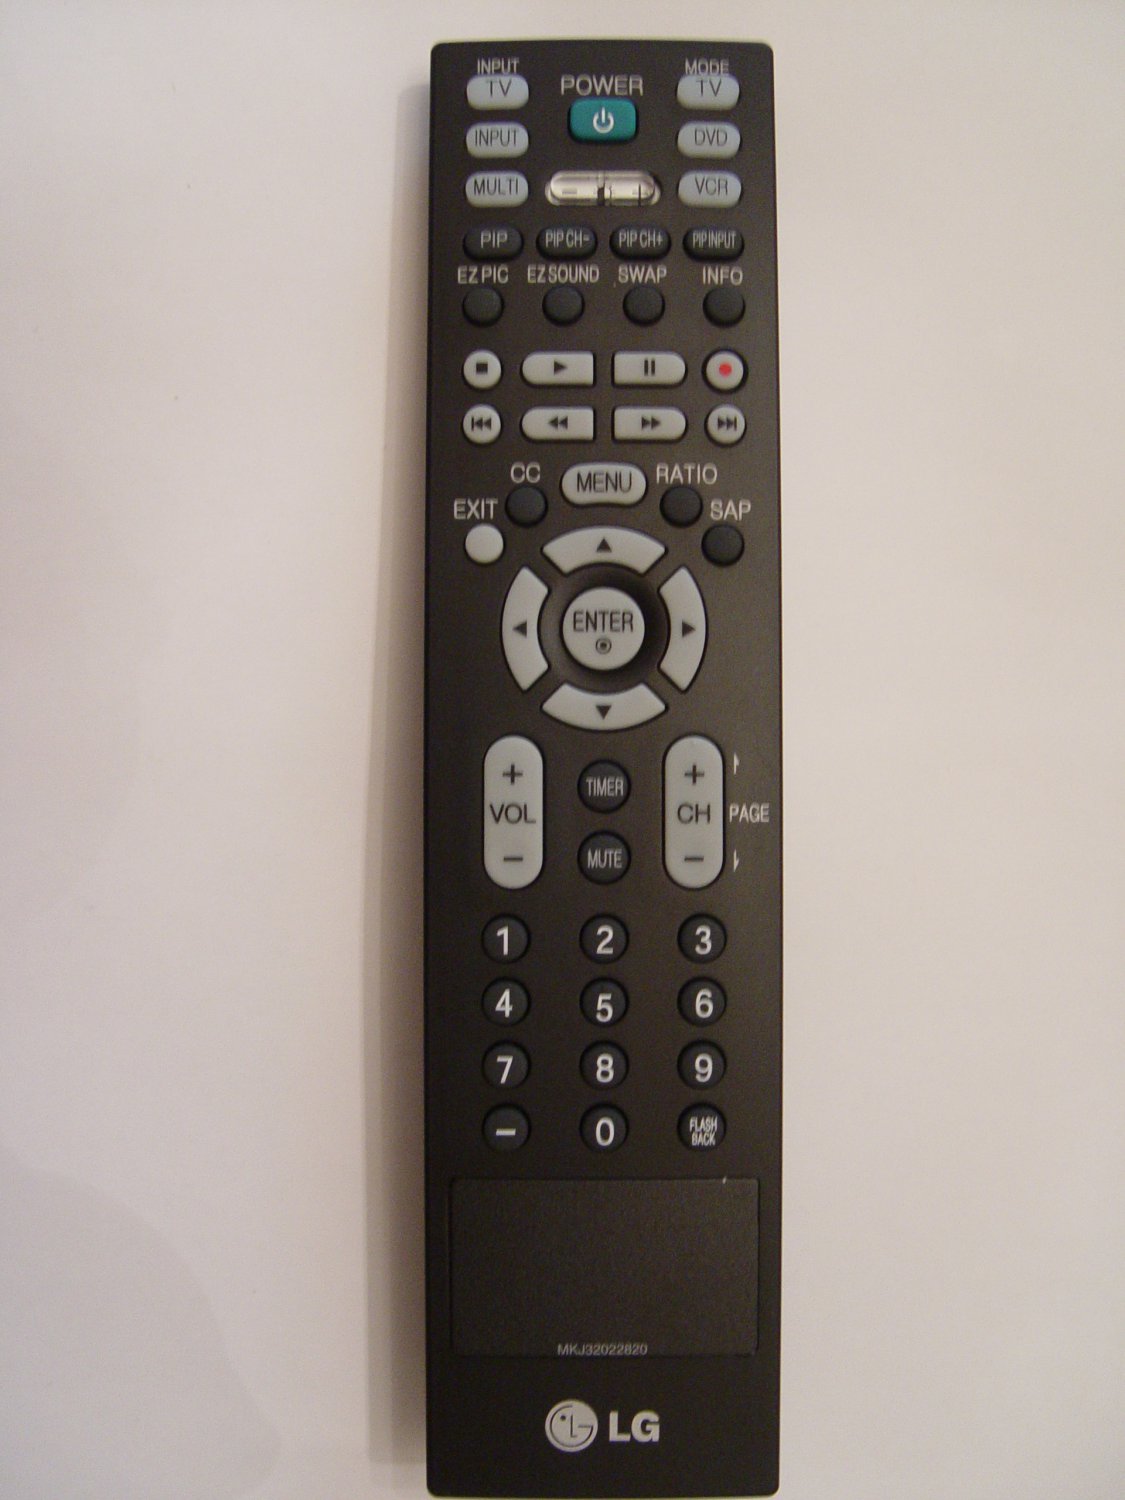 Пульт для телевизора lc. LG 37lh3000 пульт для телевизора. Пульт Ду для LG. TS-200. Пульт к телевизору LG 2012 года. Универсальные пульты Zenith.